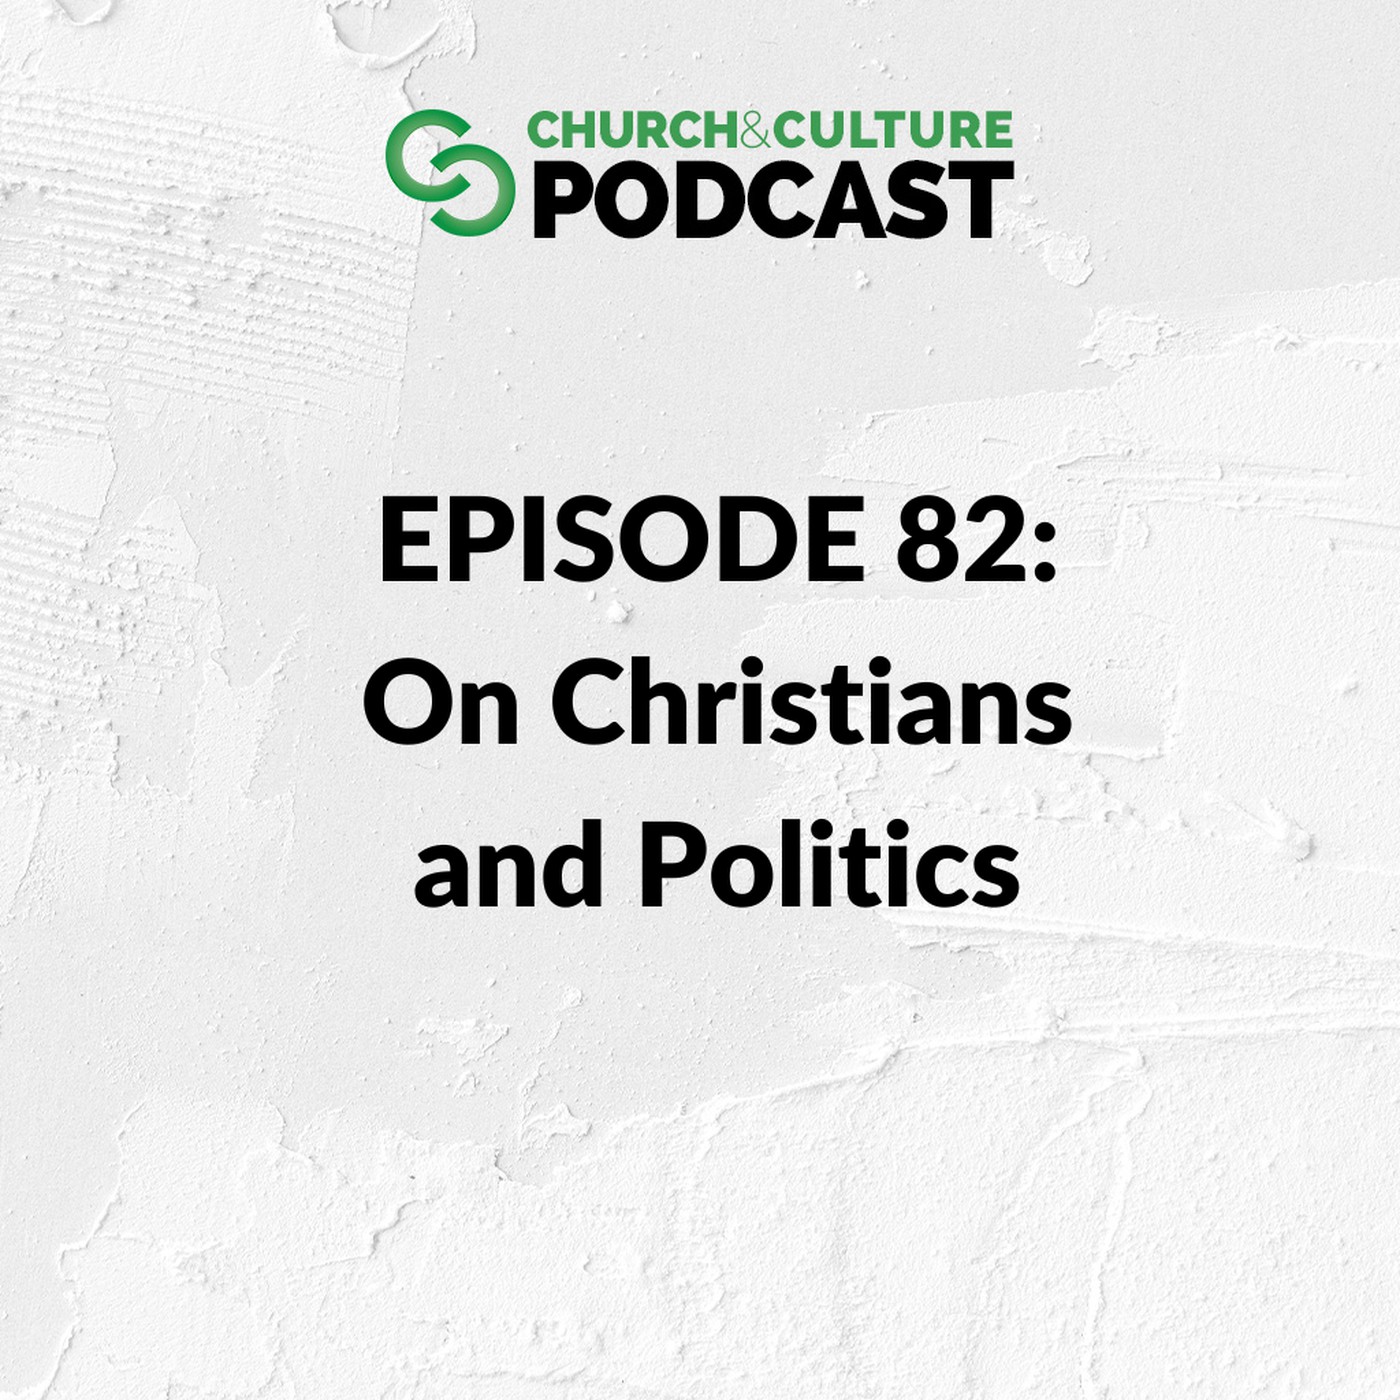 Church & Culture Podcast